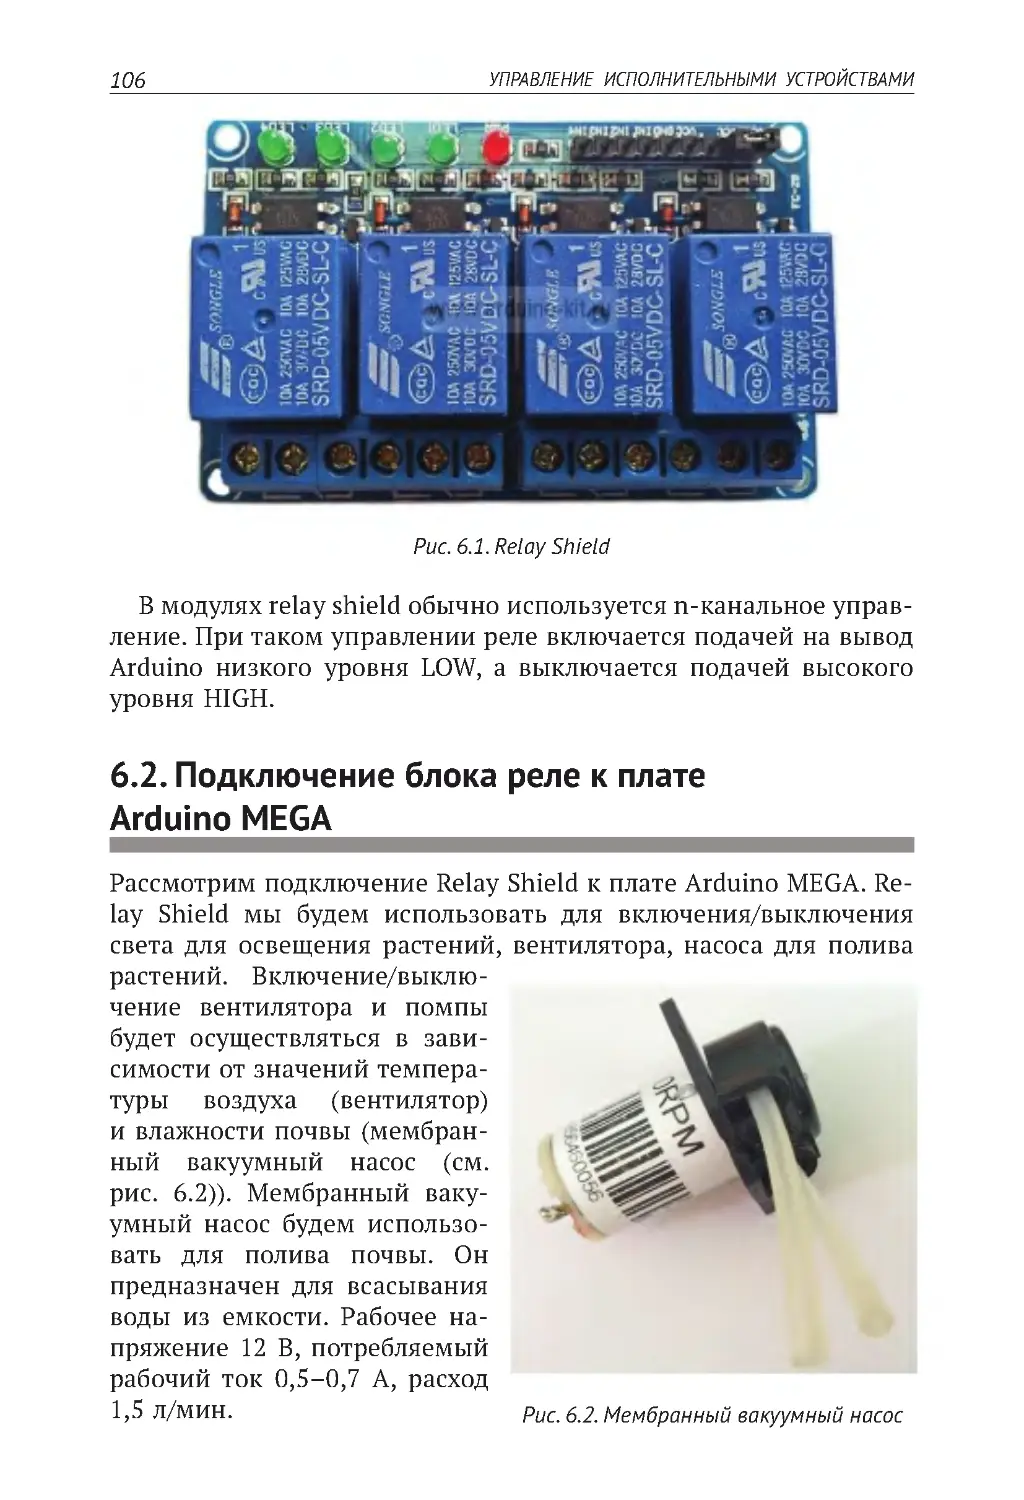 6.2. Подключение блока реле к плате Arduino MEGA